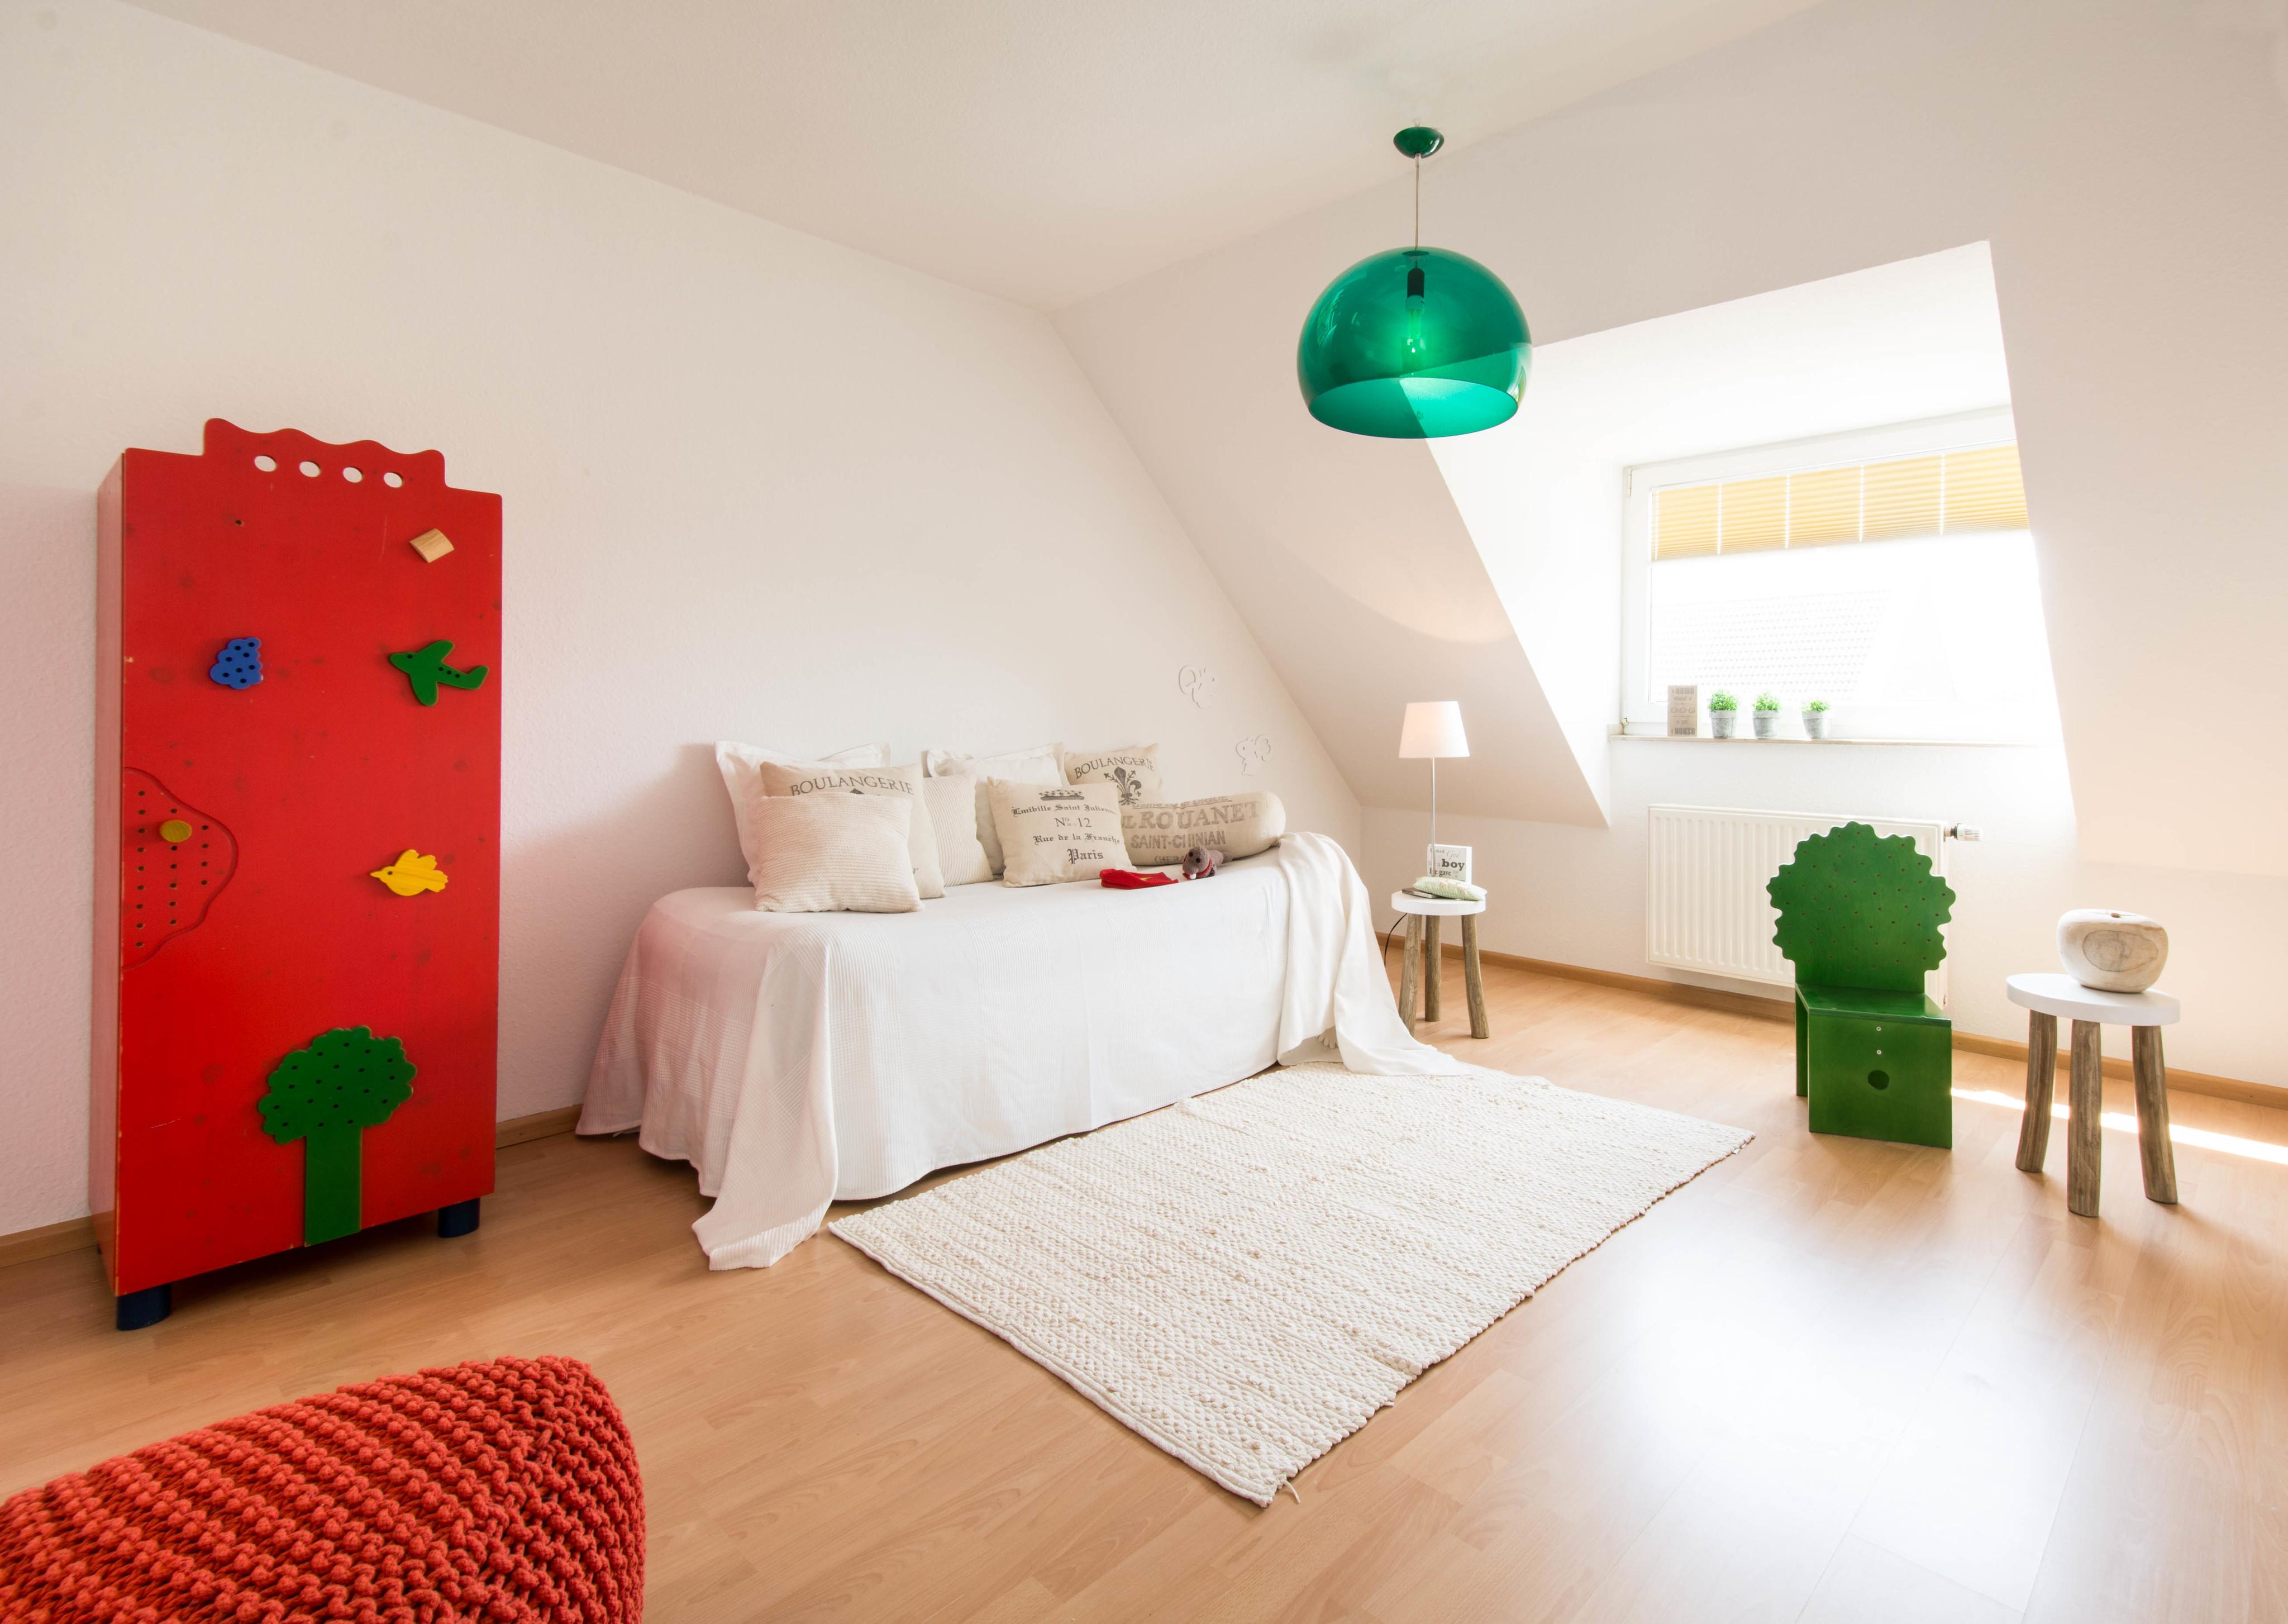 Kinderzimmer #dachschräge #bett #tagesdecke #kissen #pendelleuchte #laminat ©Luna Home Staging